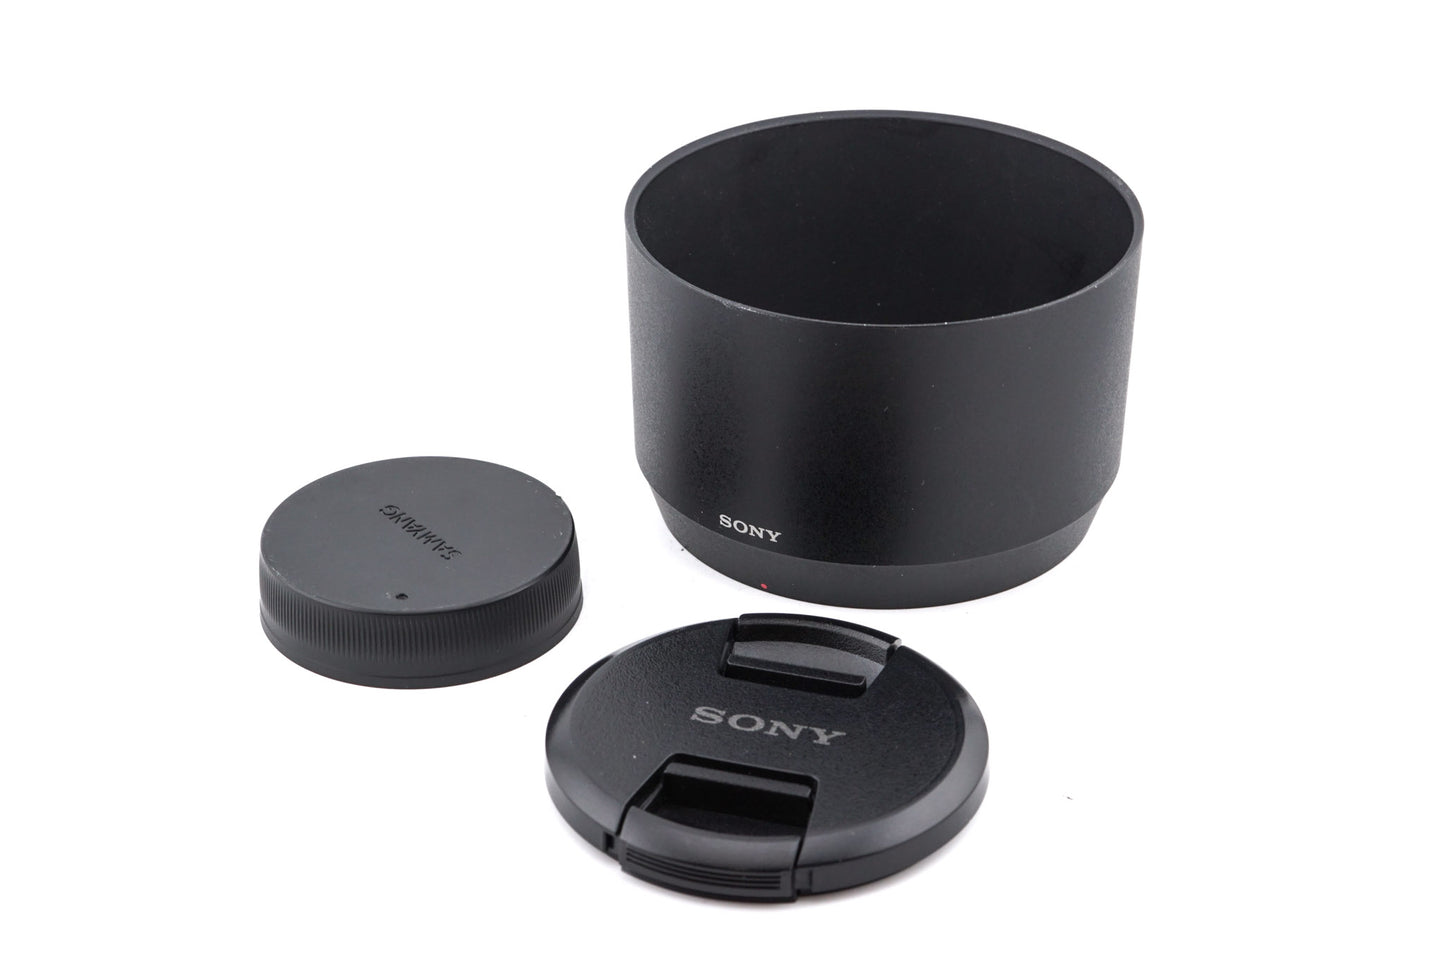 Sony 70-300mm f4.5-5.6 G OSS